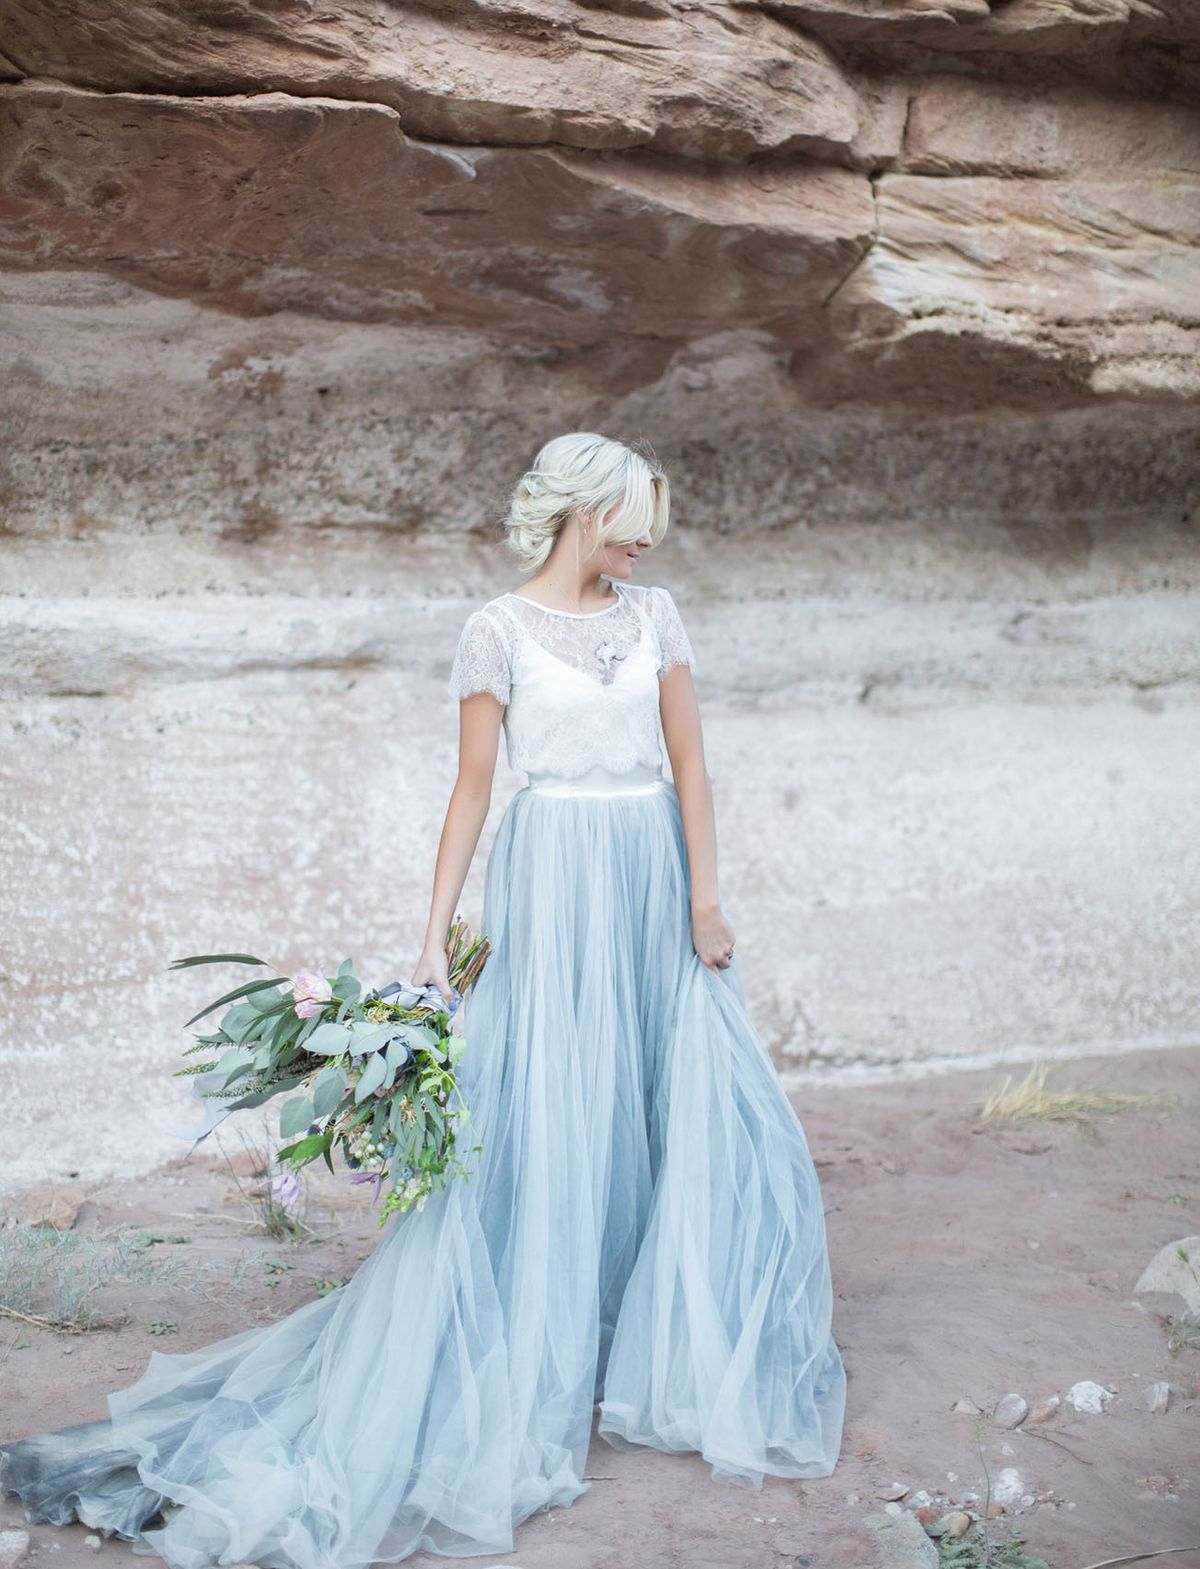 Brautkleider mit farbigem Tüllrock sind modern